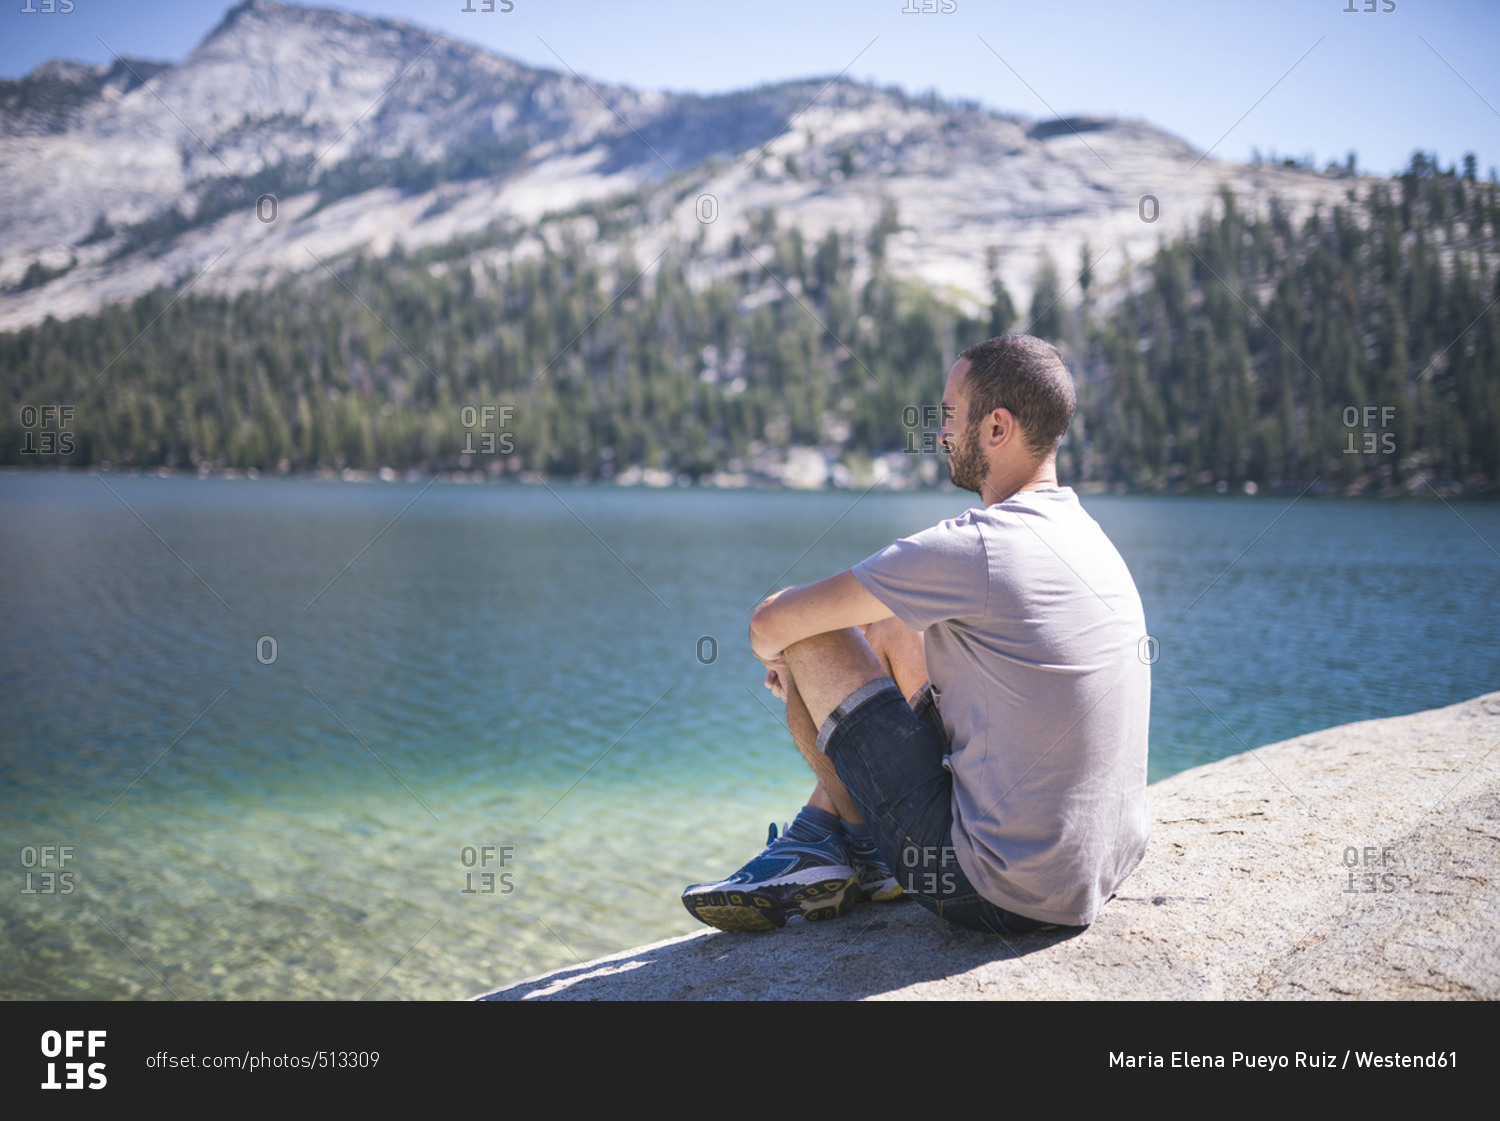 USA- California- Yosemite National Park- man sitting at mountain lake